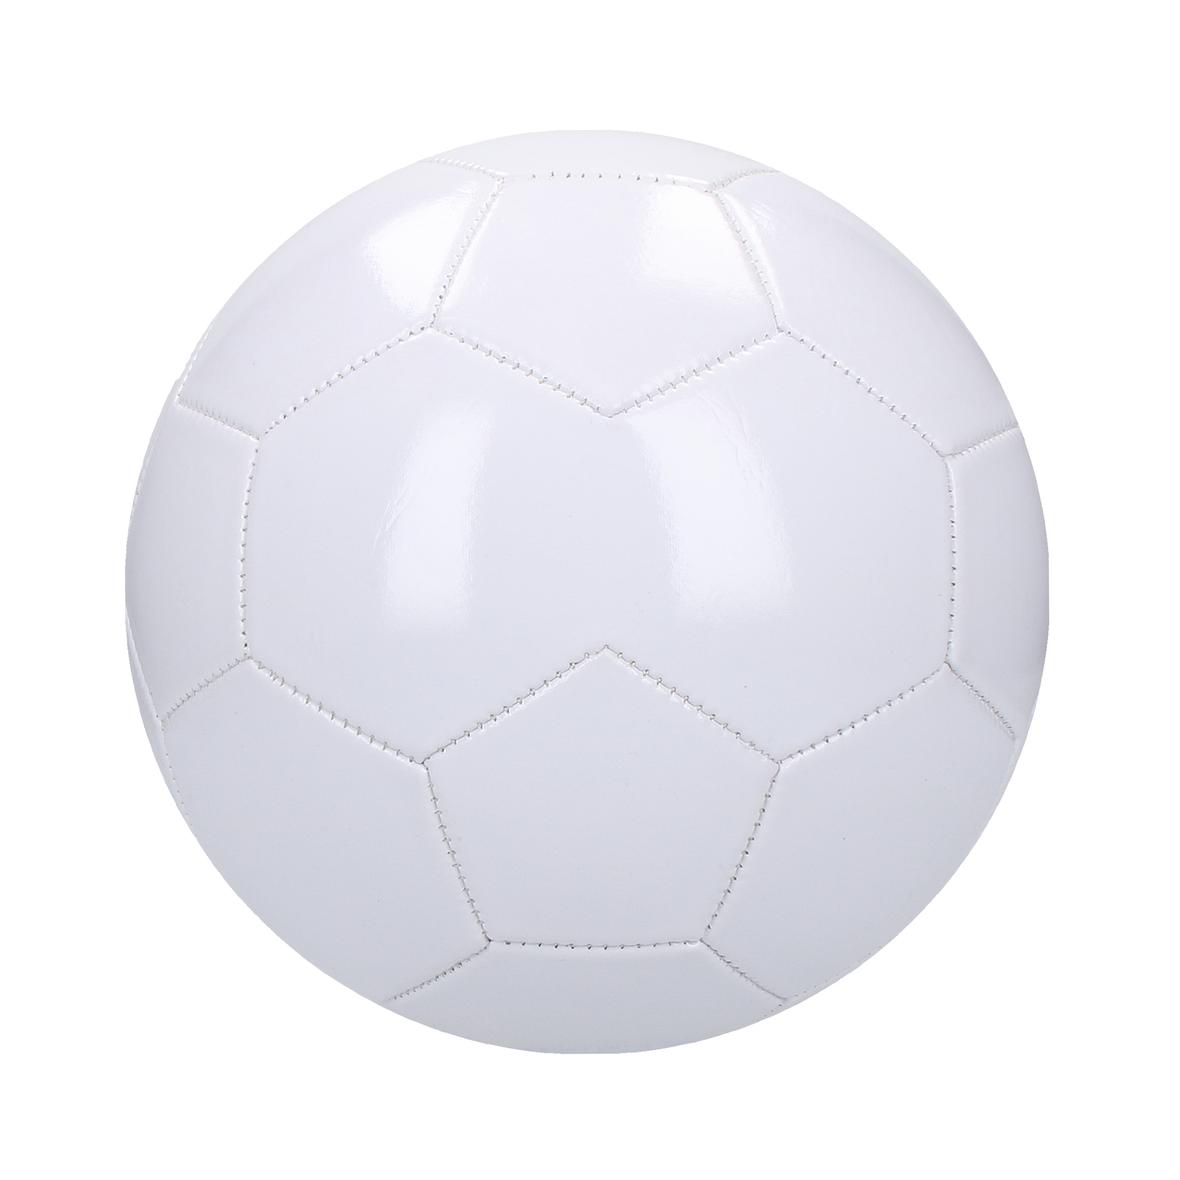 Ballon de football blanc personnalisé - Lukas